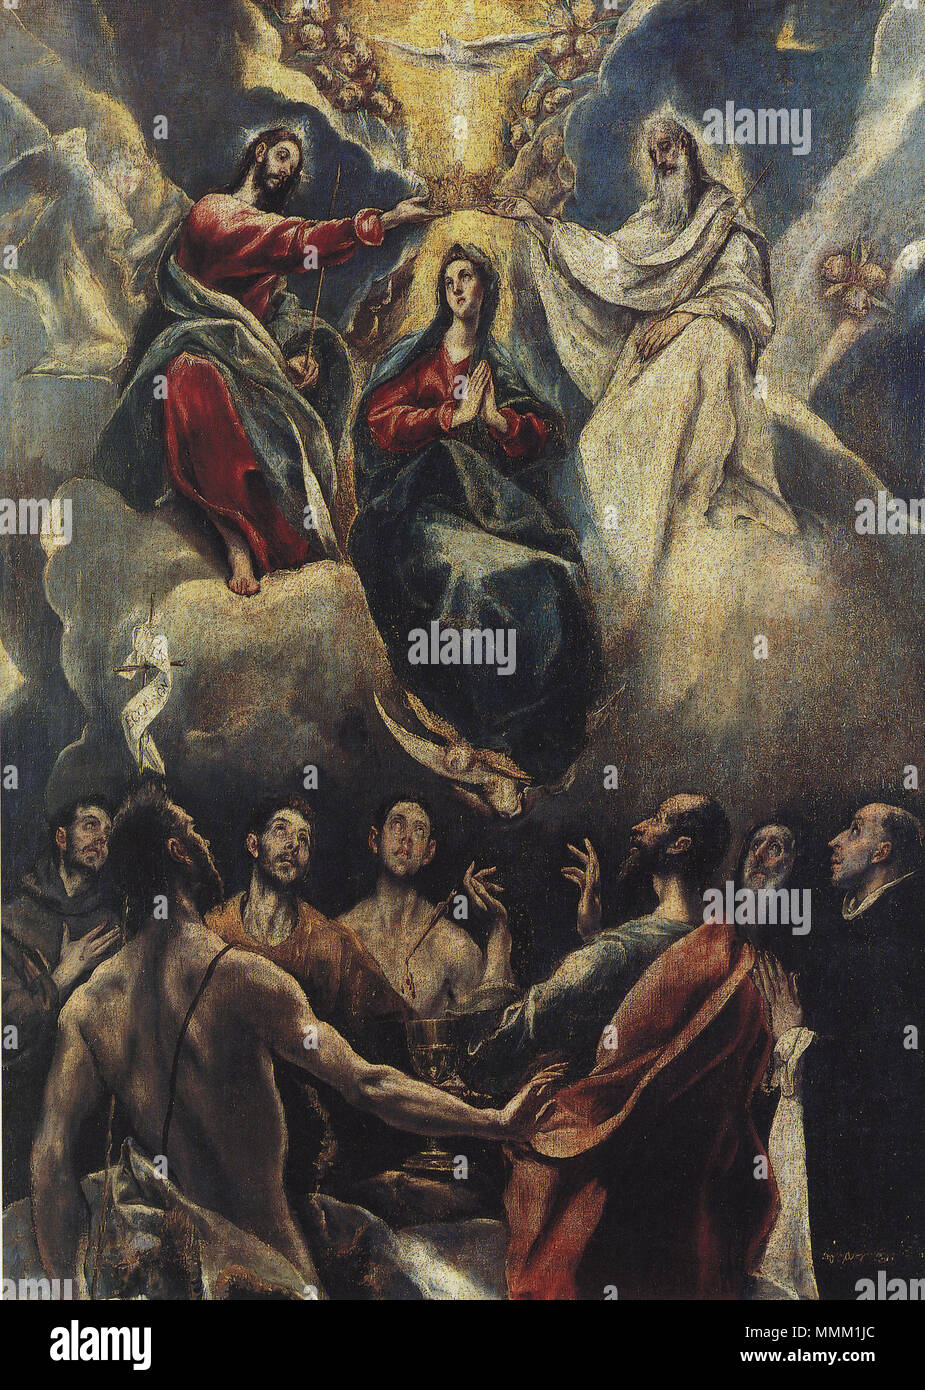 Español : El lienzo représen la Coronación de la Virgen María por los tres  miembros de la Santisima Trinidad : Dios Padre, Jesucristo y el Espíritu  Santo. Coronacion de la Virgen